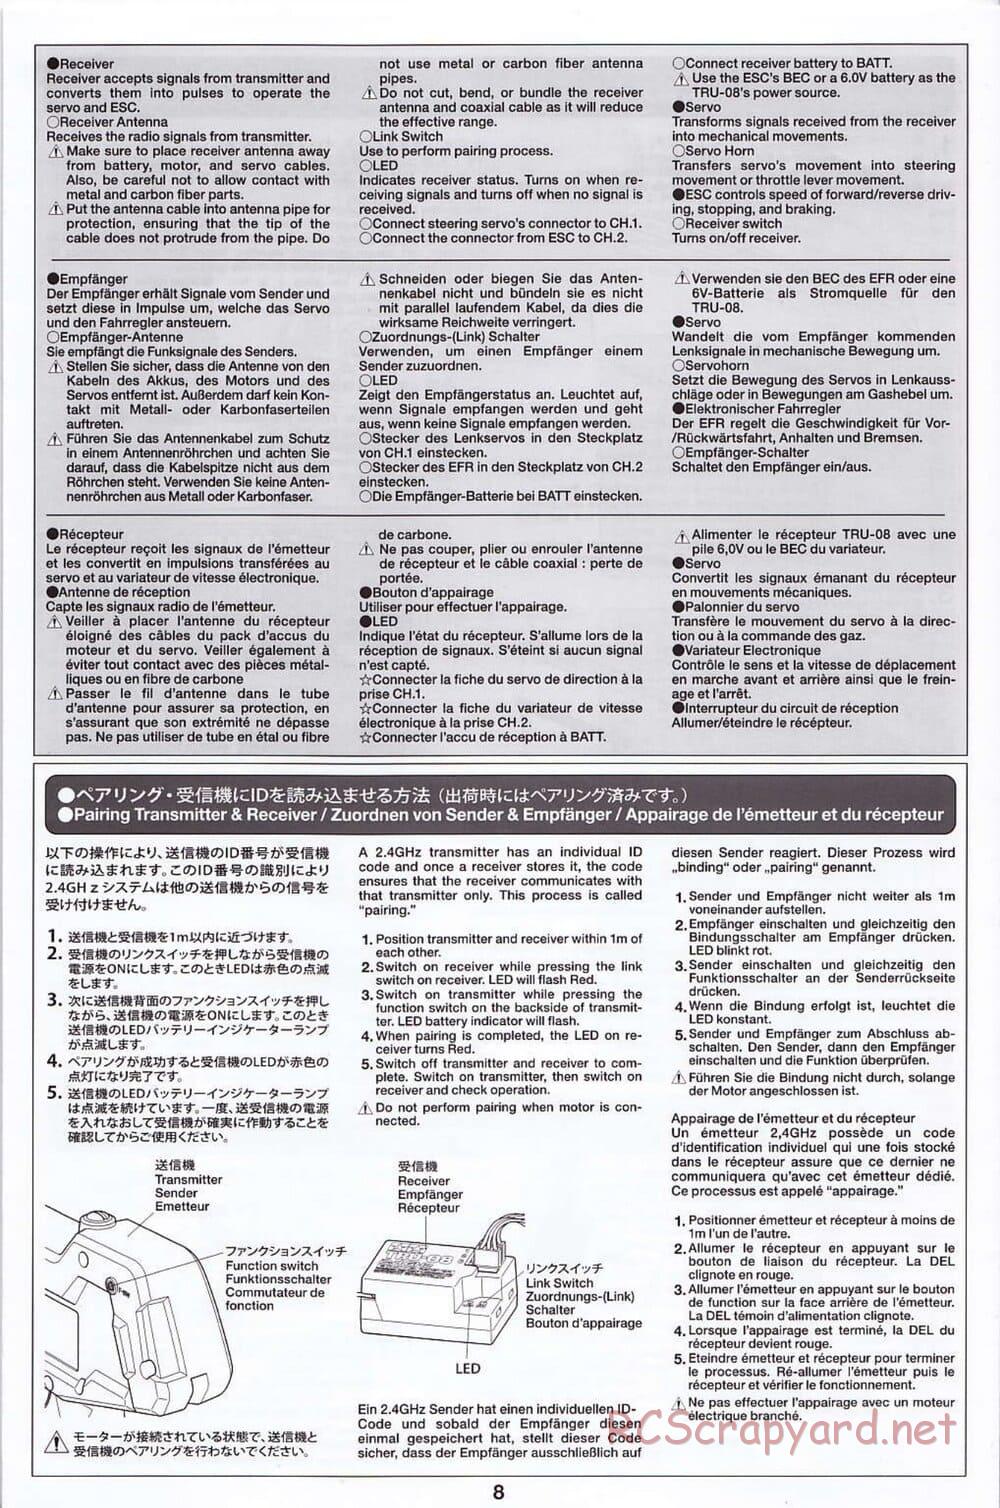 Tamiya - SA TT-02 - Radio - Manual - Page 8